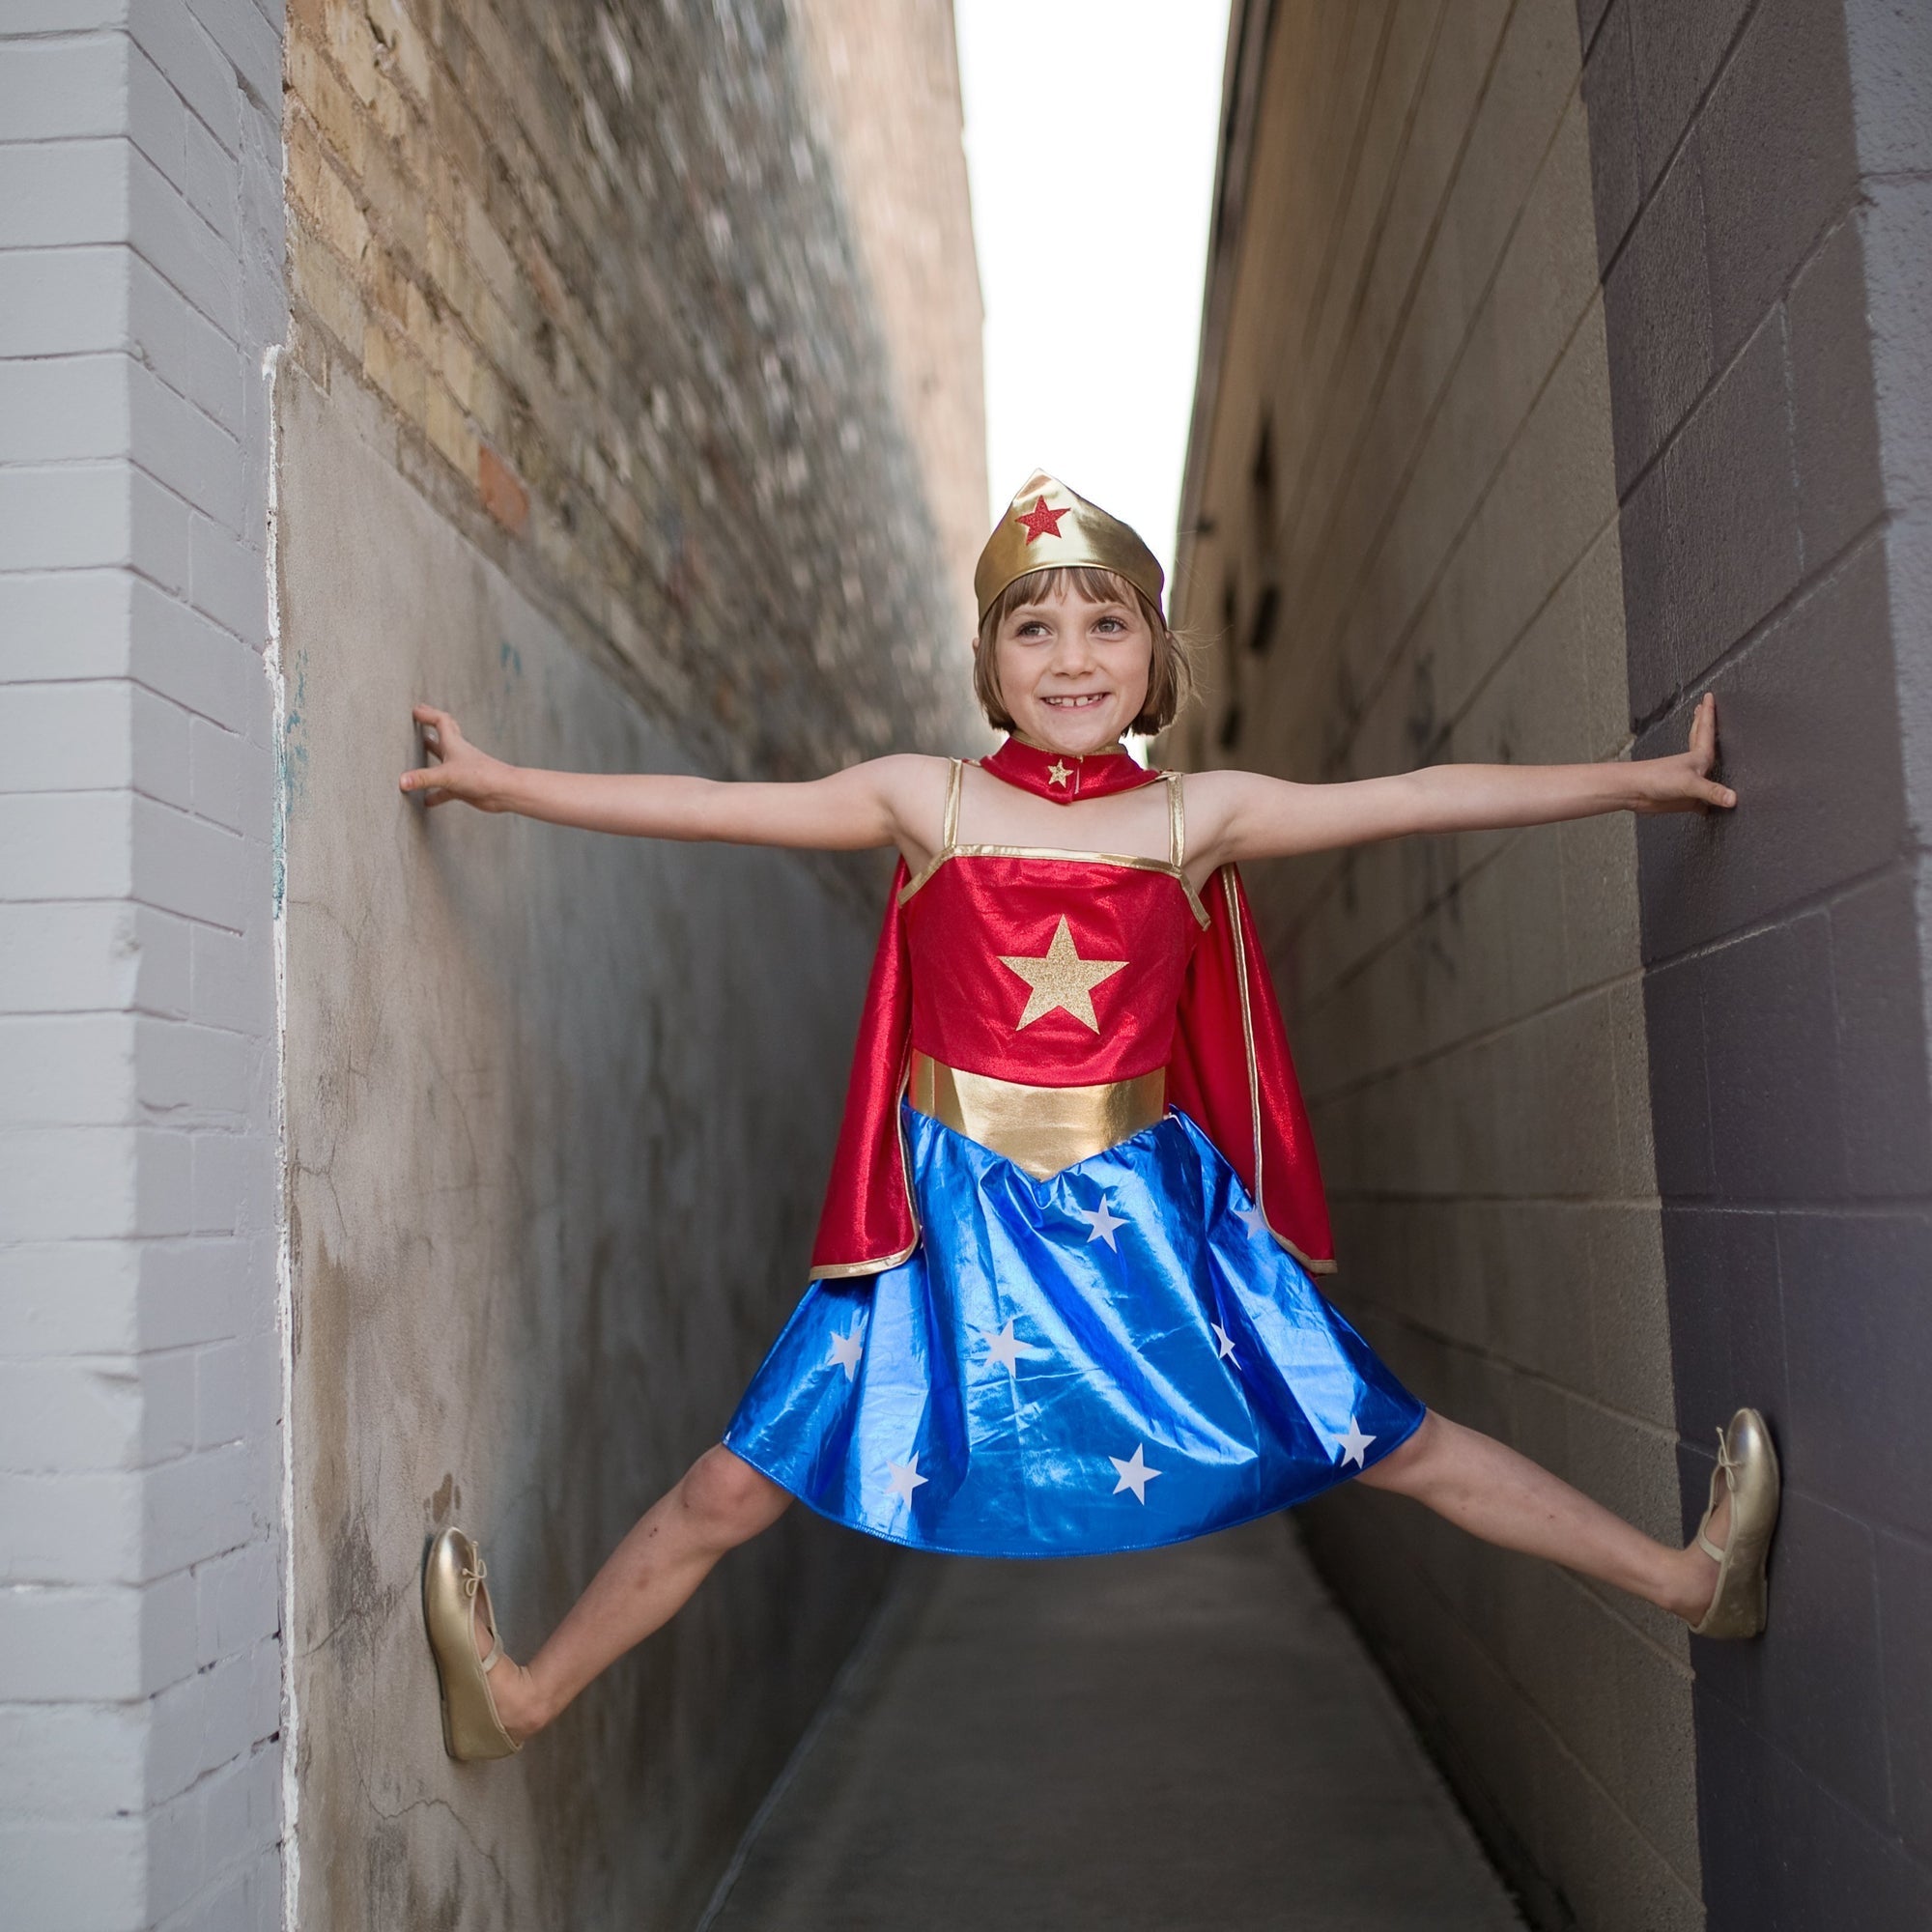 Costumi da Supereroe per bambini e bambine, divertenti, colorati e  originali.